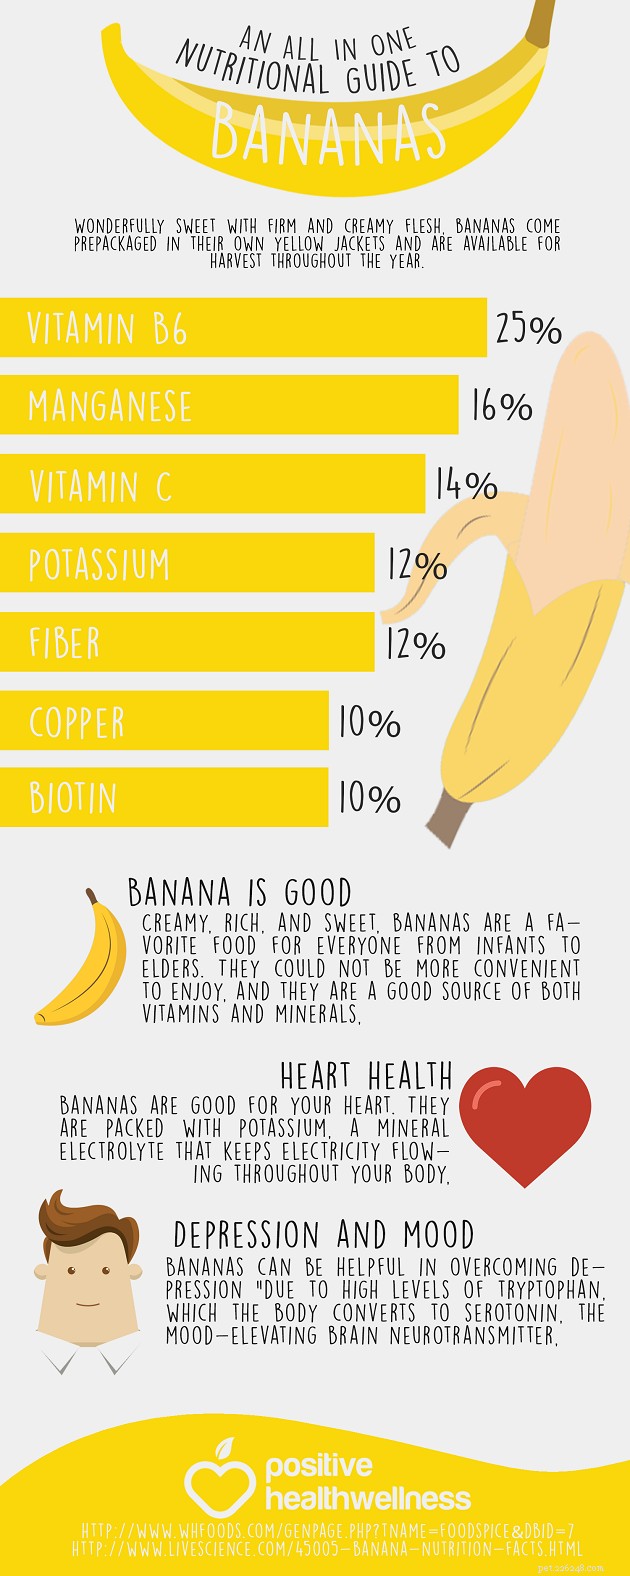 Můžou psi jíst banány? 7 potenciálních výhod a 4 vedlejší účinky